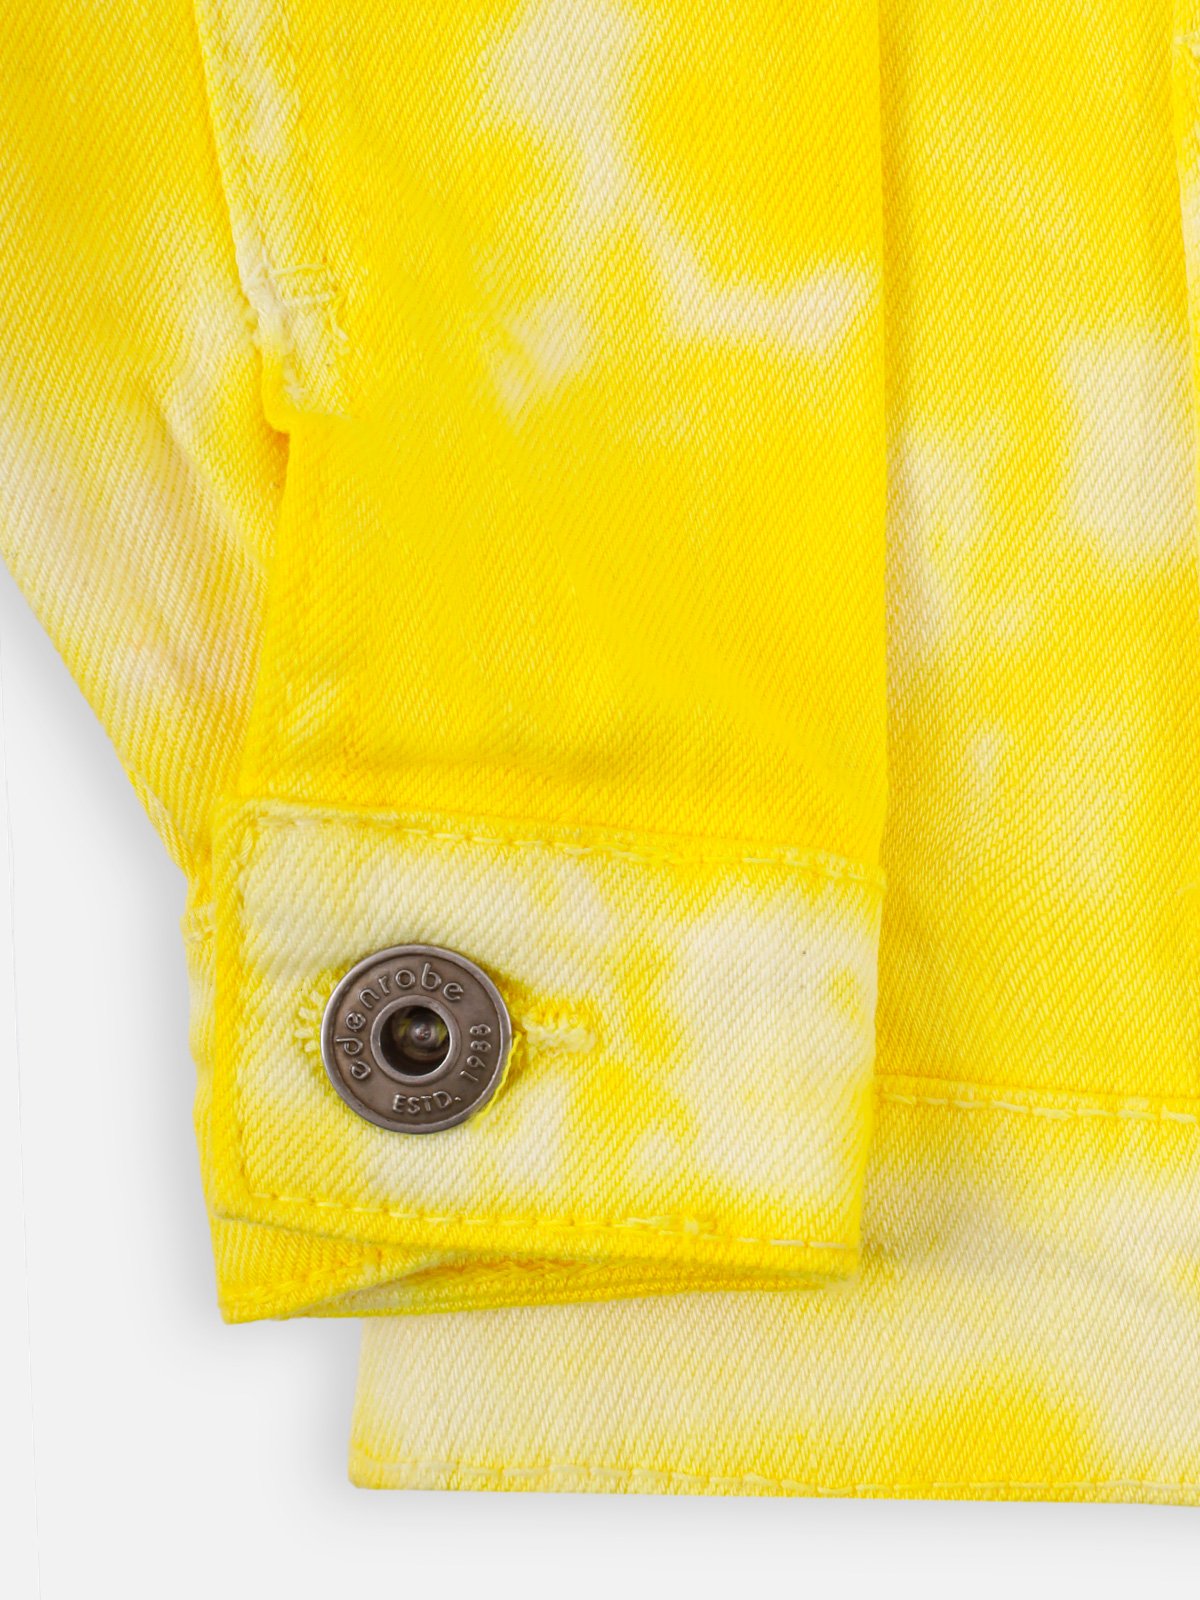 Girl's Yellow Jacket - EGTJD21-008